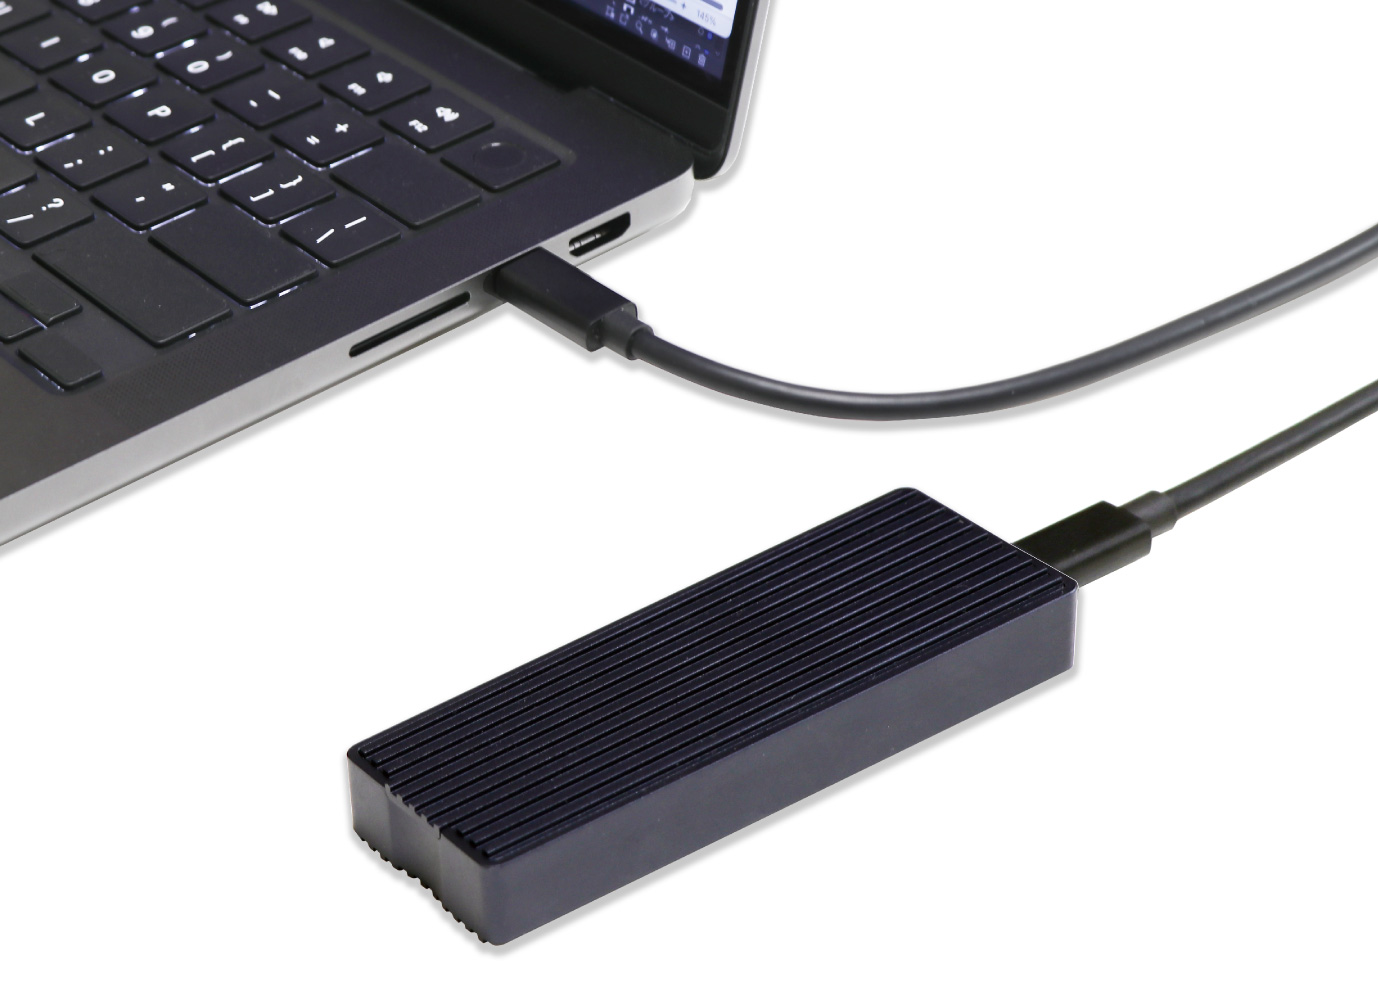 アオテック AOTECH USB4 SSDケース AOK-M2NVME-USB4 ITPROTECH アイティプロテック